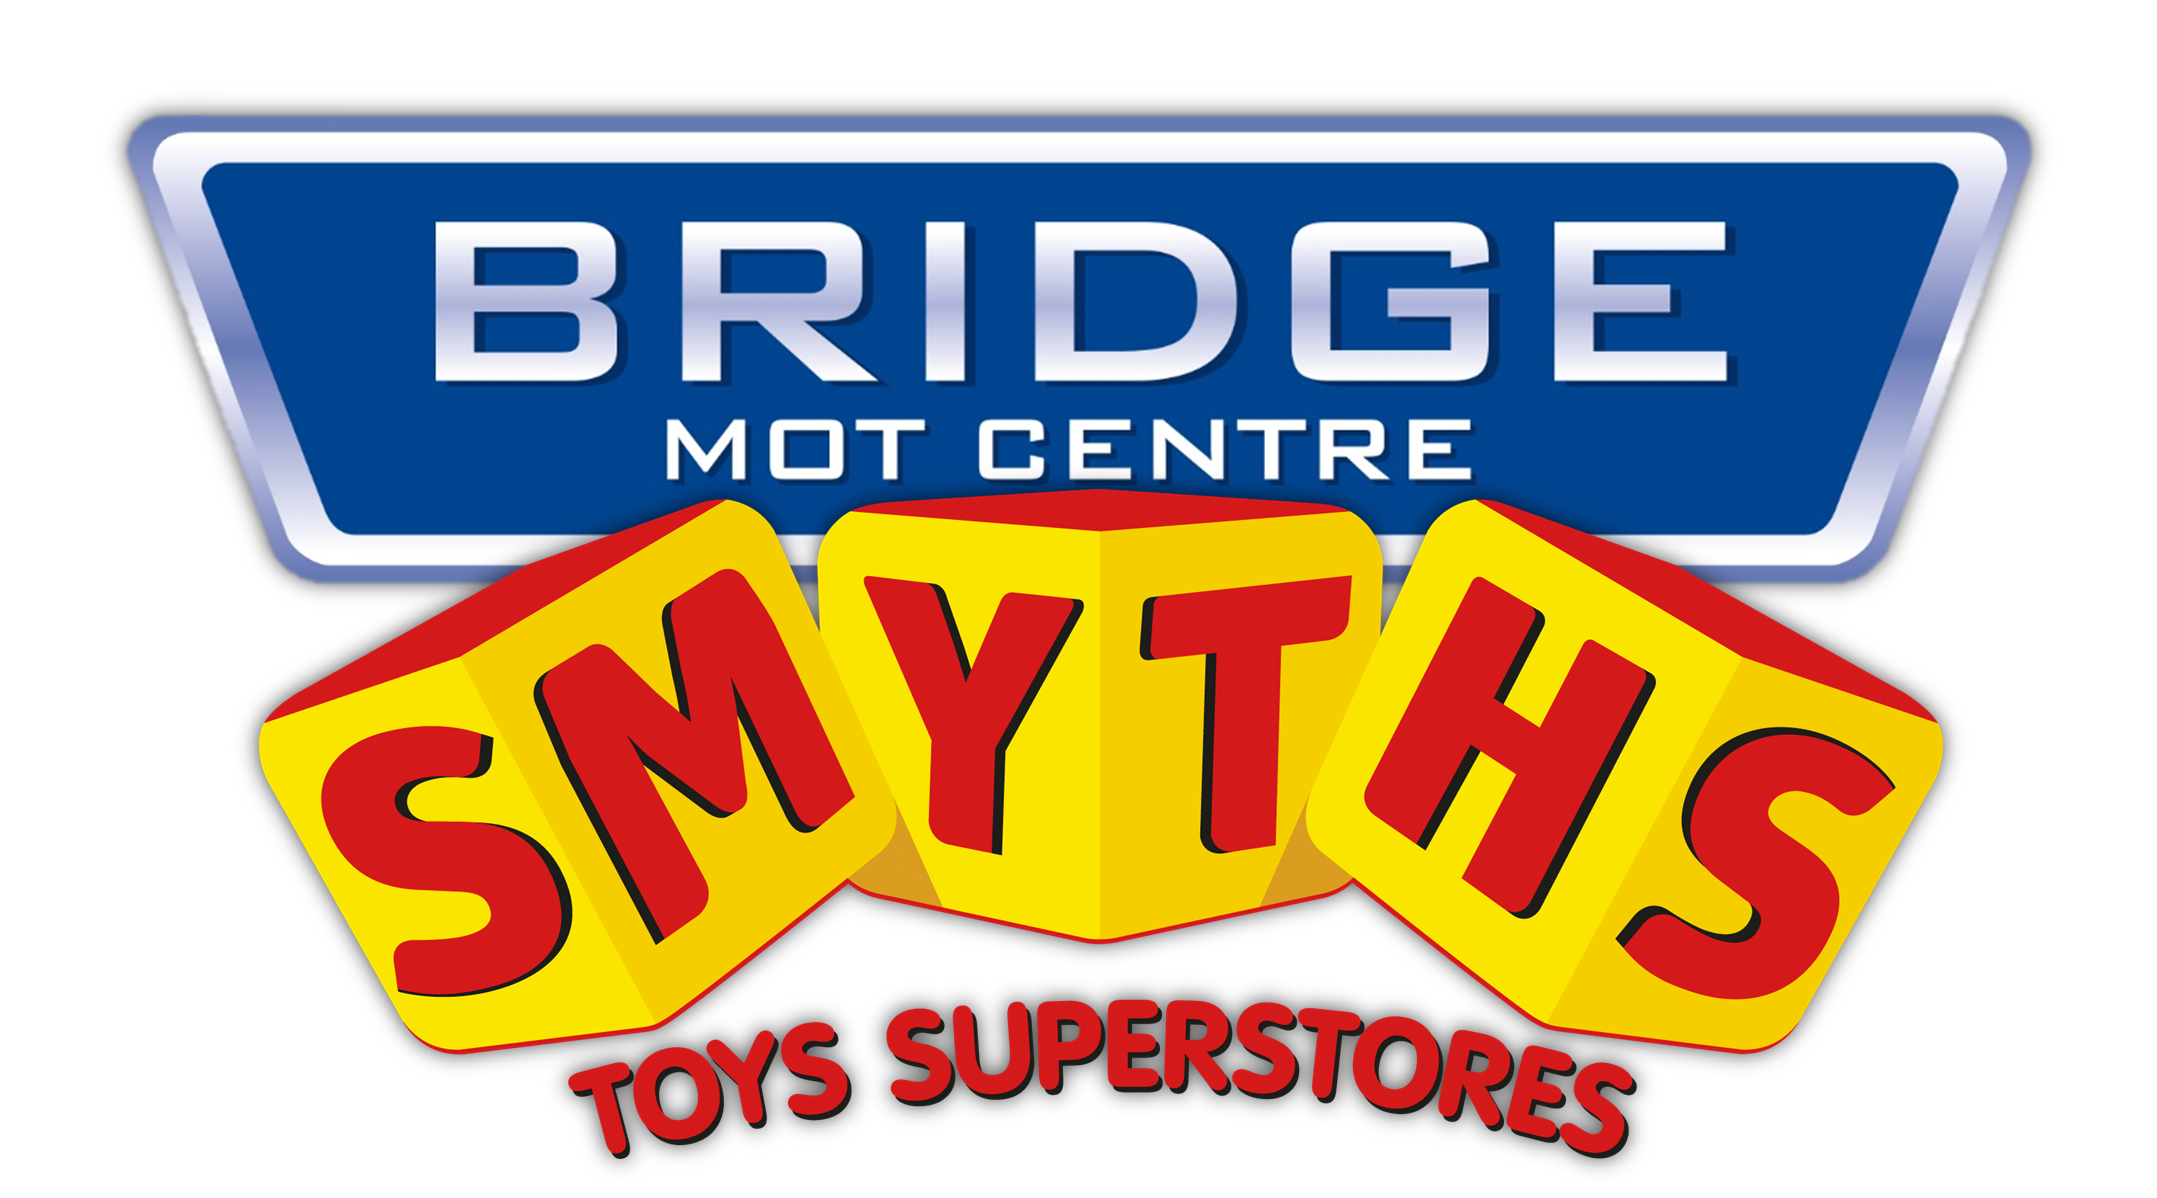 Free £10 Smyths Toys Voucher with Bridge MOT Centre